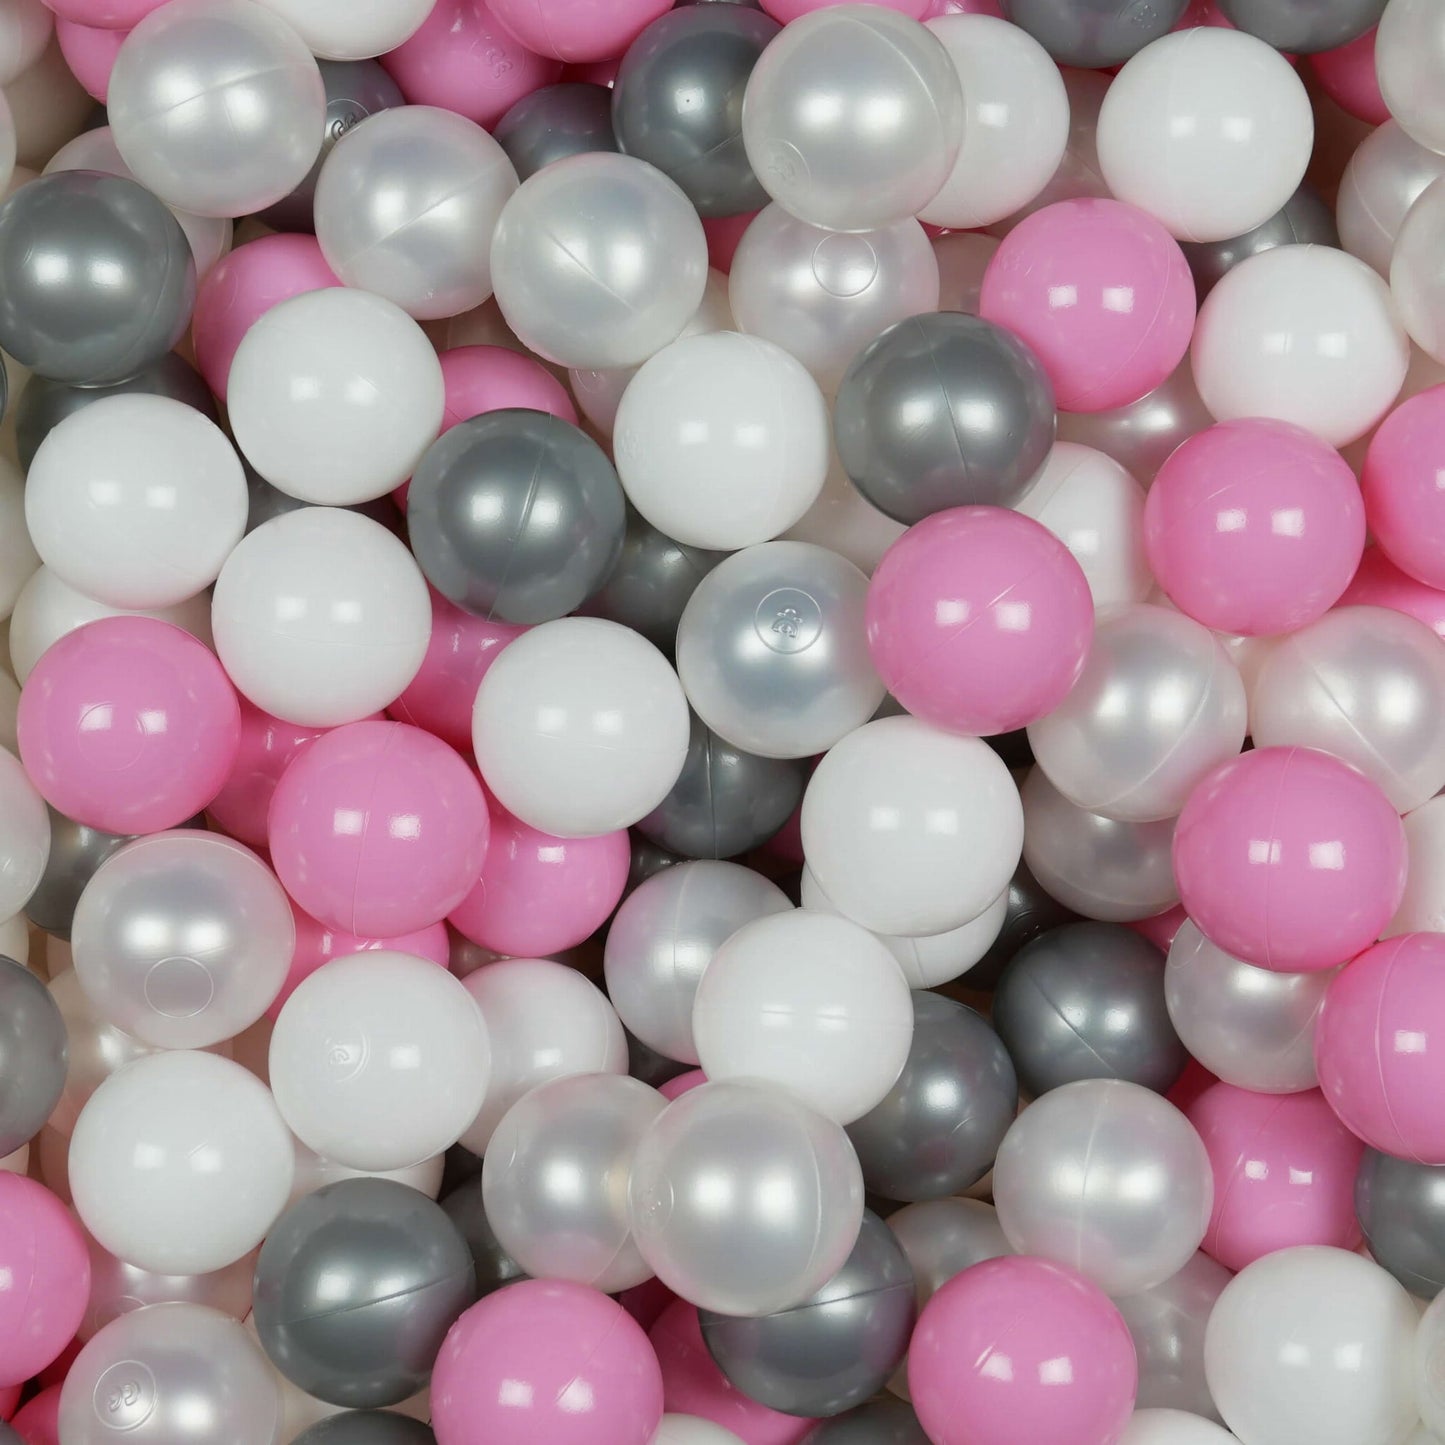 Balles de jeu ø7cm 300 pièces blanc, perle, argent, rose poudré